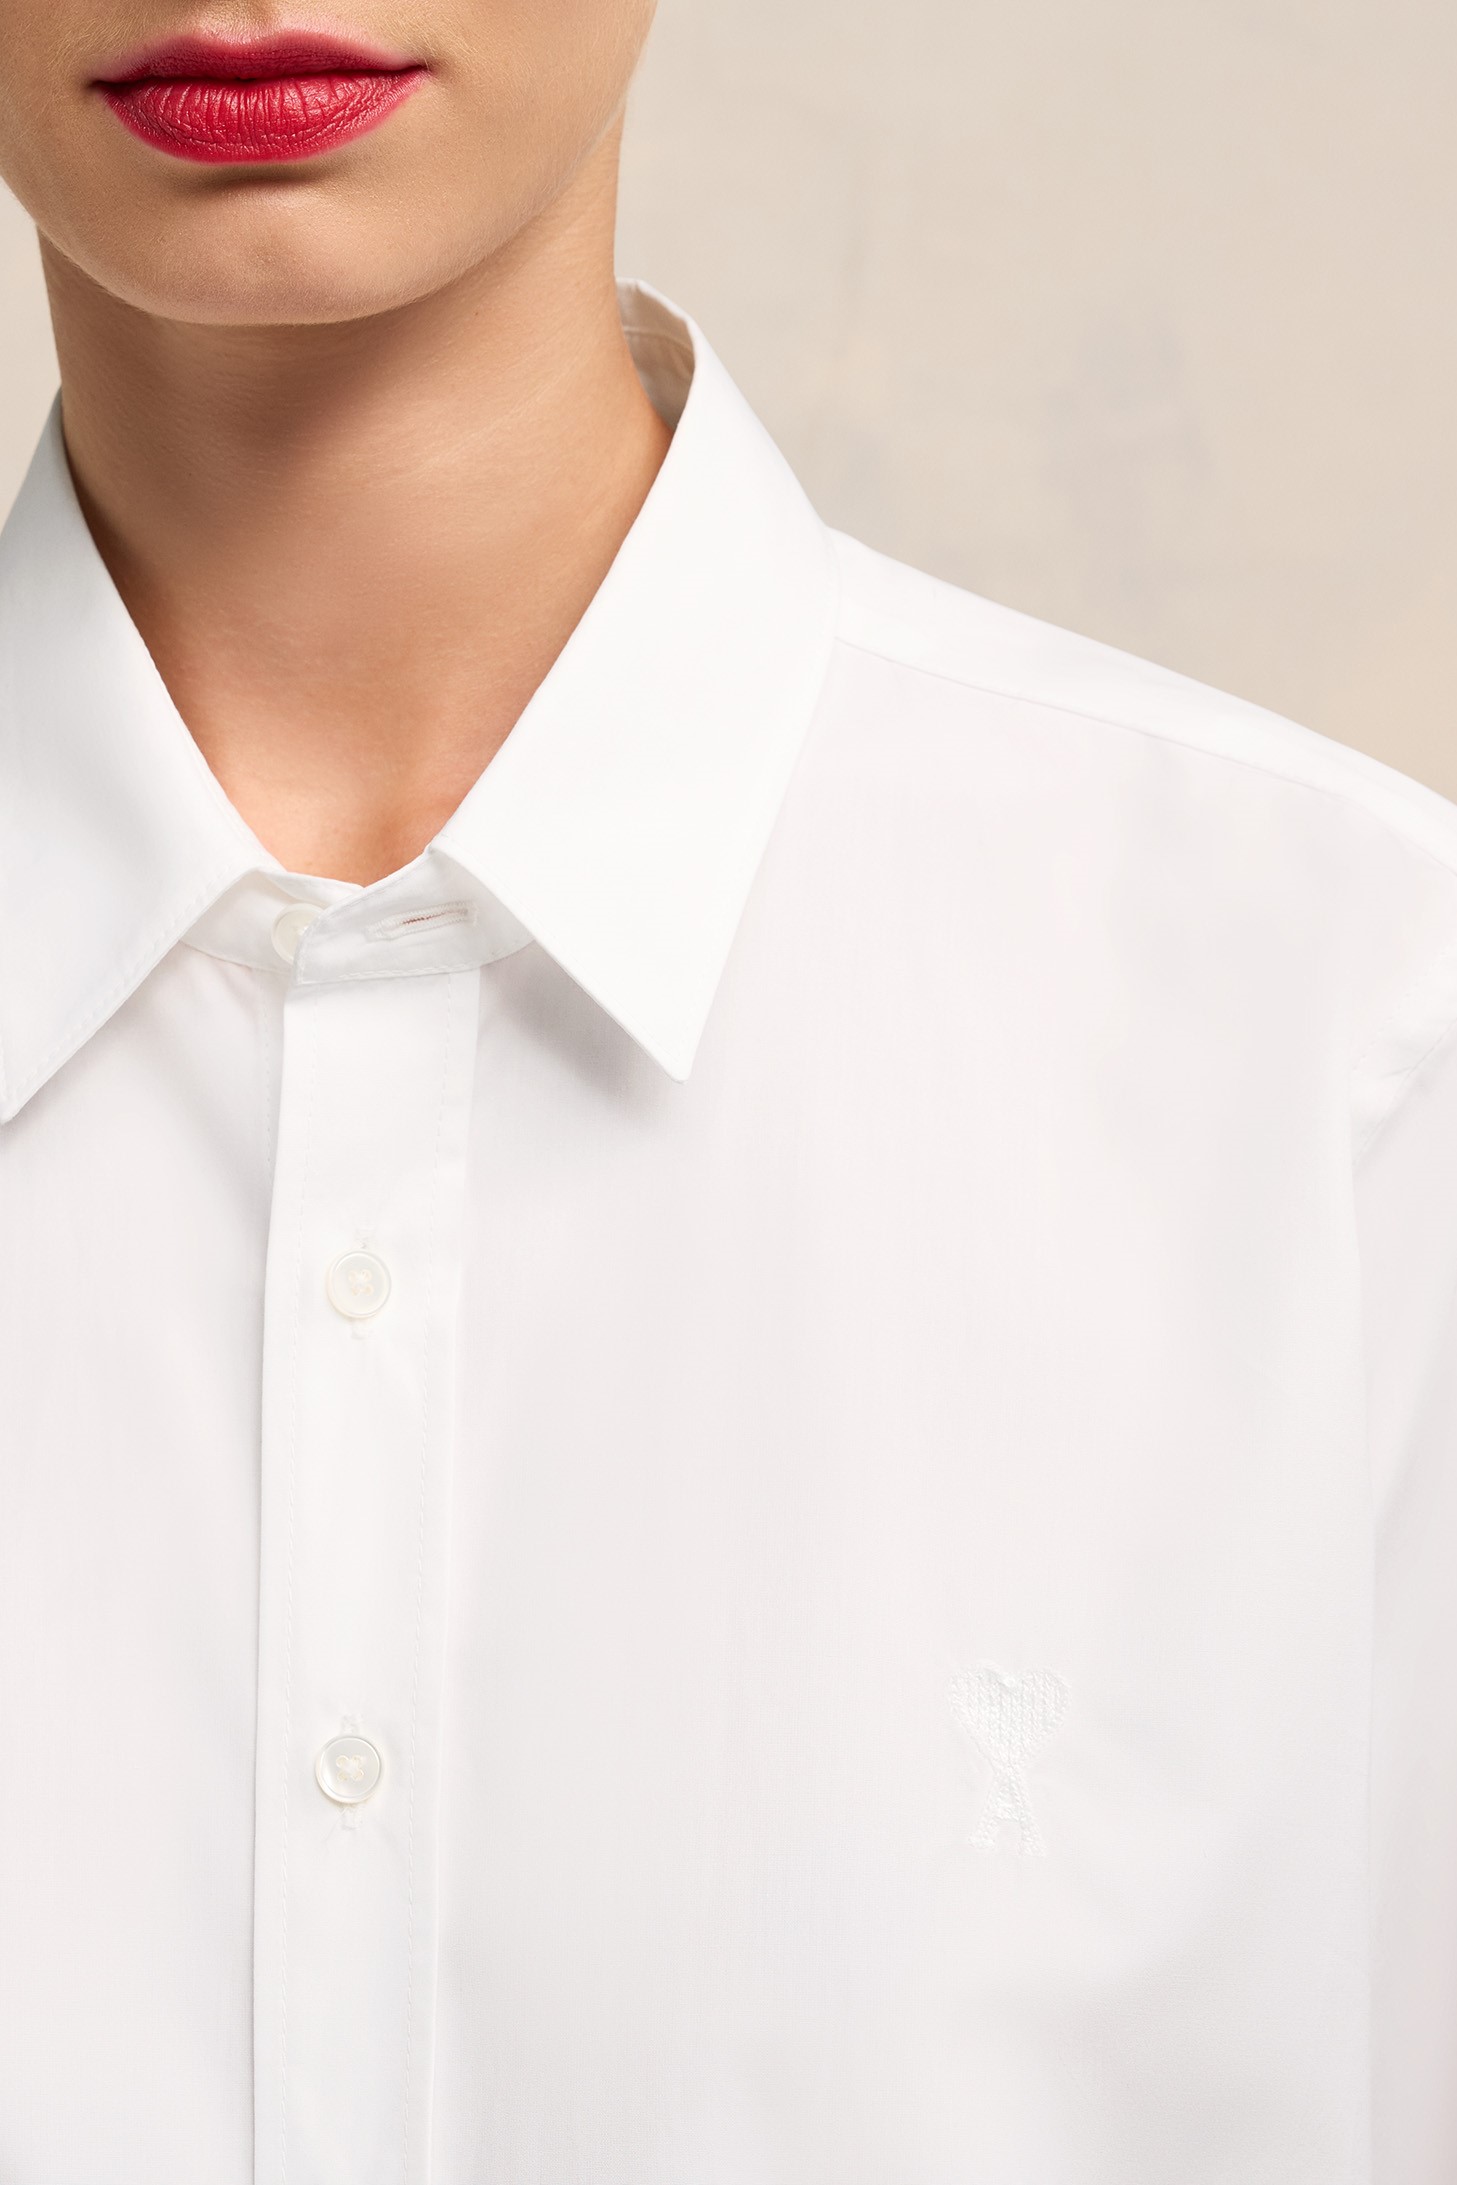 AMI PARIS de Coeur Classic Shirt in White